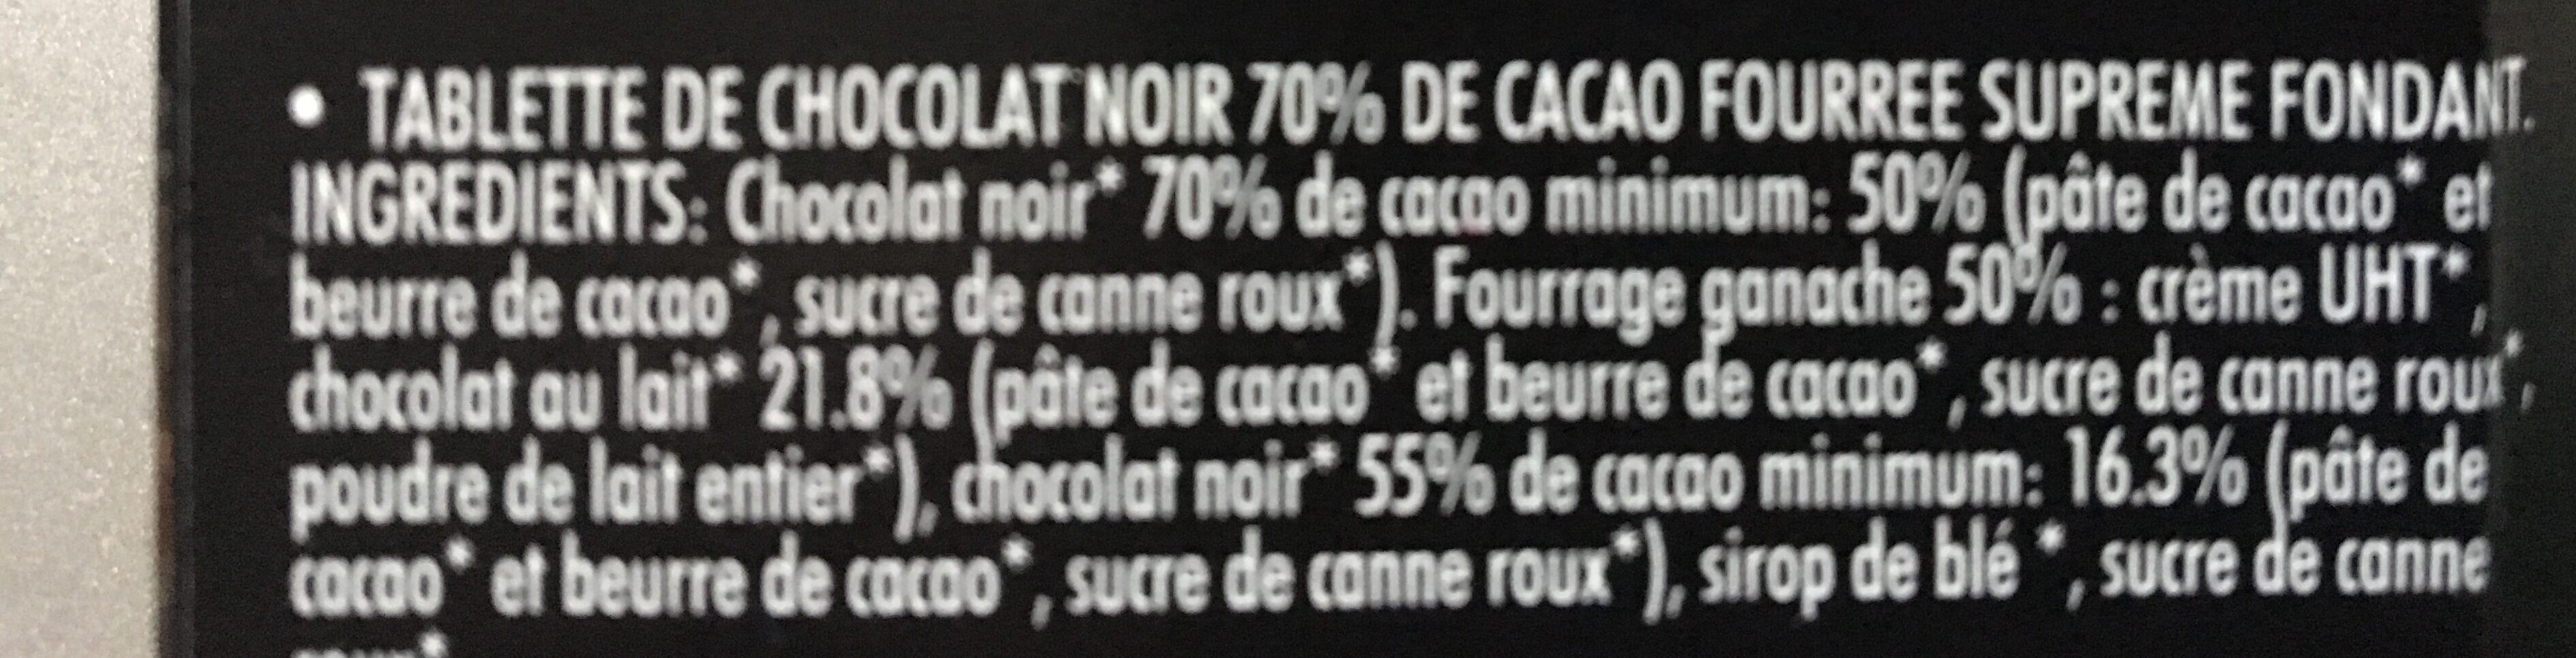 Chocolat Noir coeur fondant 70% Cacao Fourre - Ingrédients